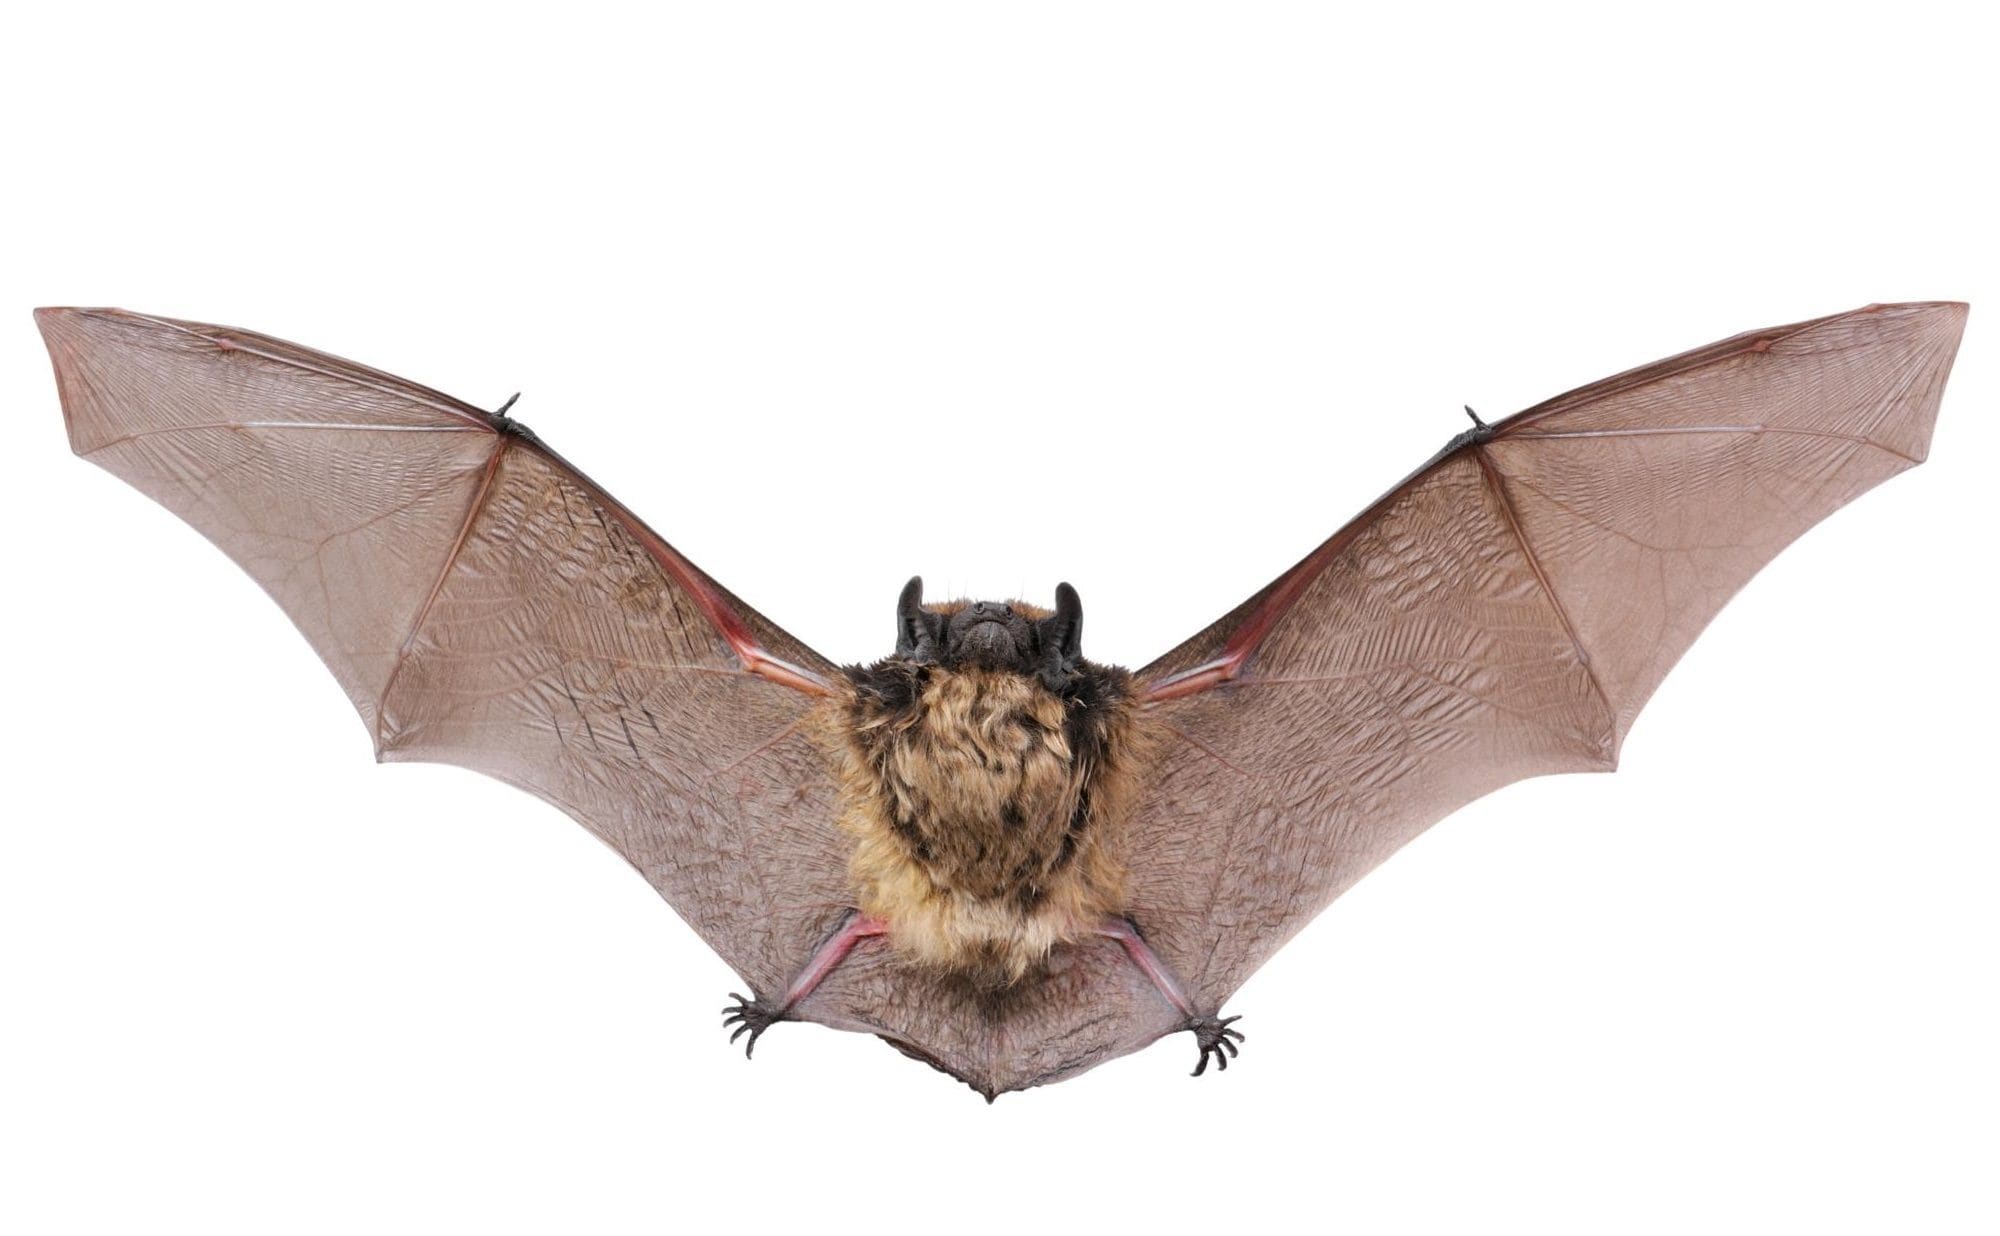 Bat removal austin, rid bats, bats in the attic, bat in house austin
